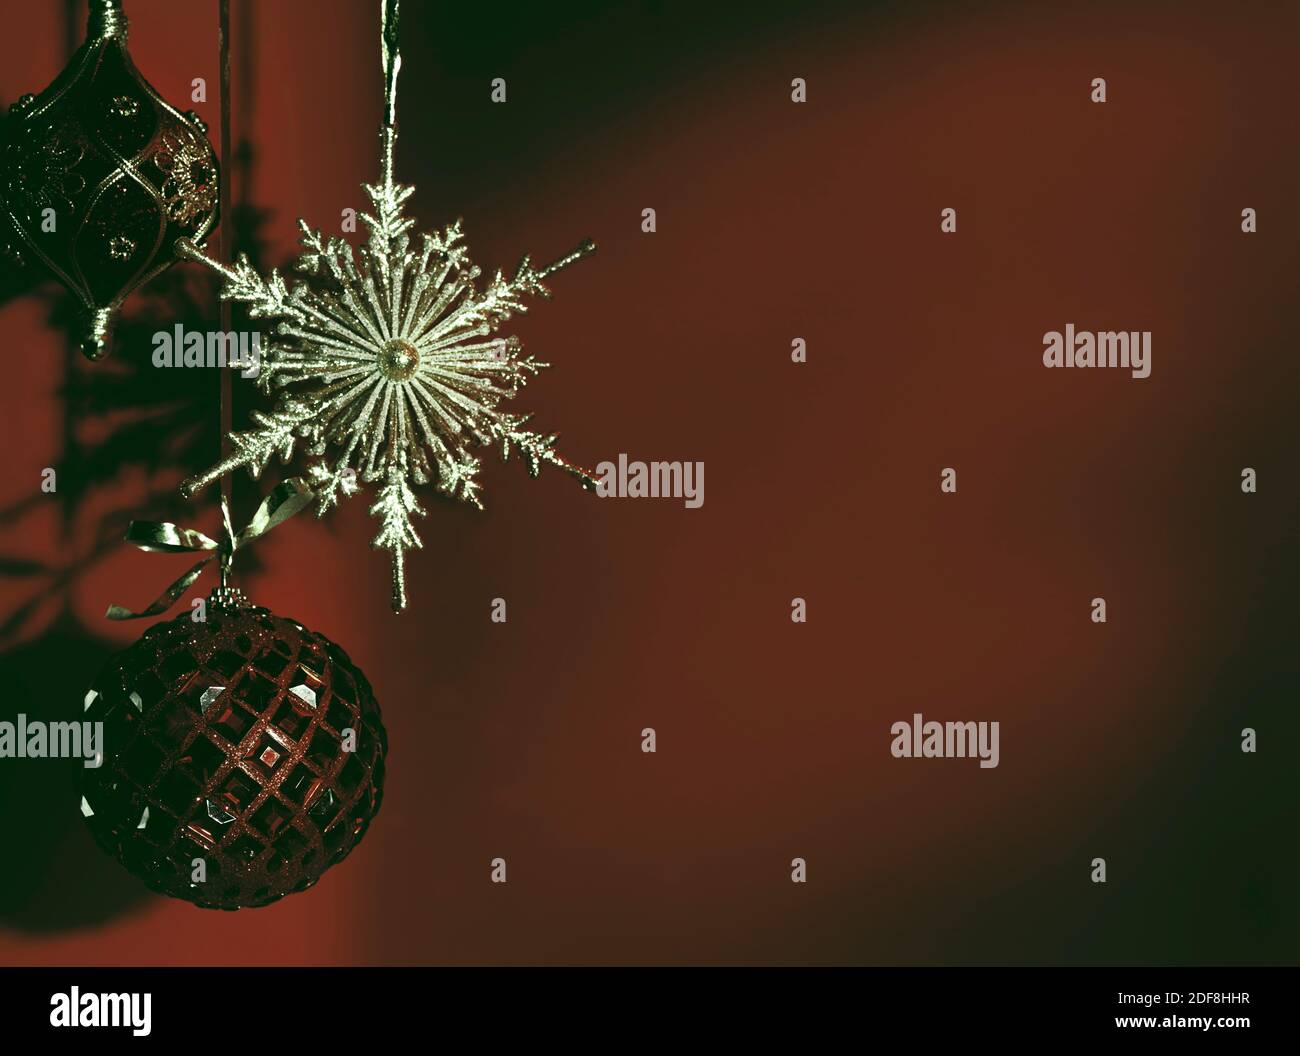 Décoration de Noël brillante sur fond rouge foncé décoloré. Vacances artistiques d'hiver, concept nouvel an avec espace copie. Banque D'Images